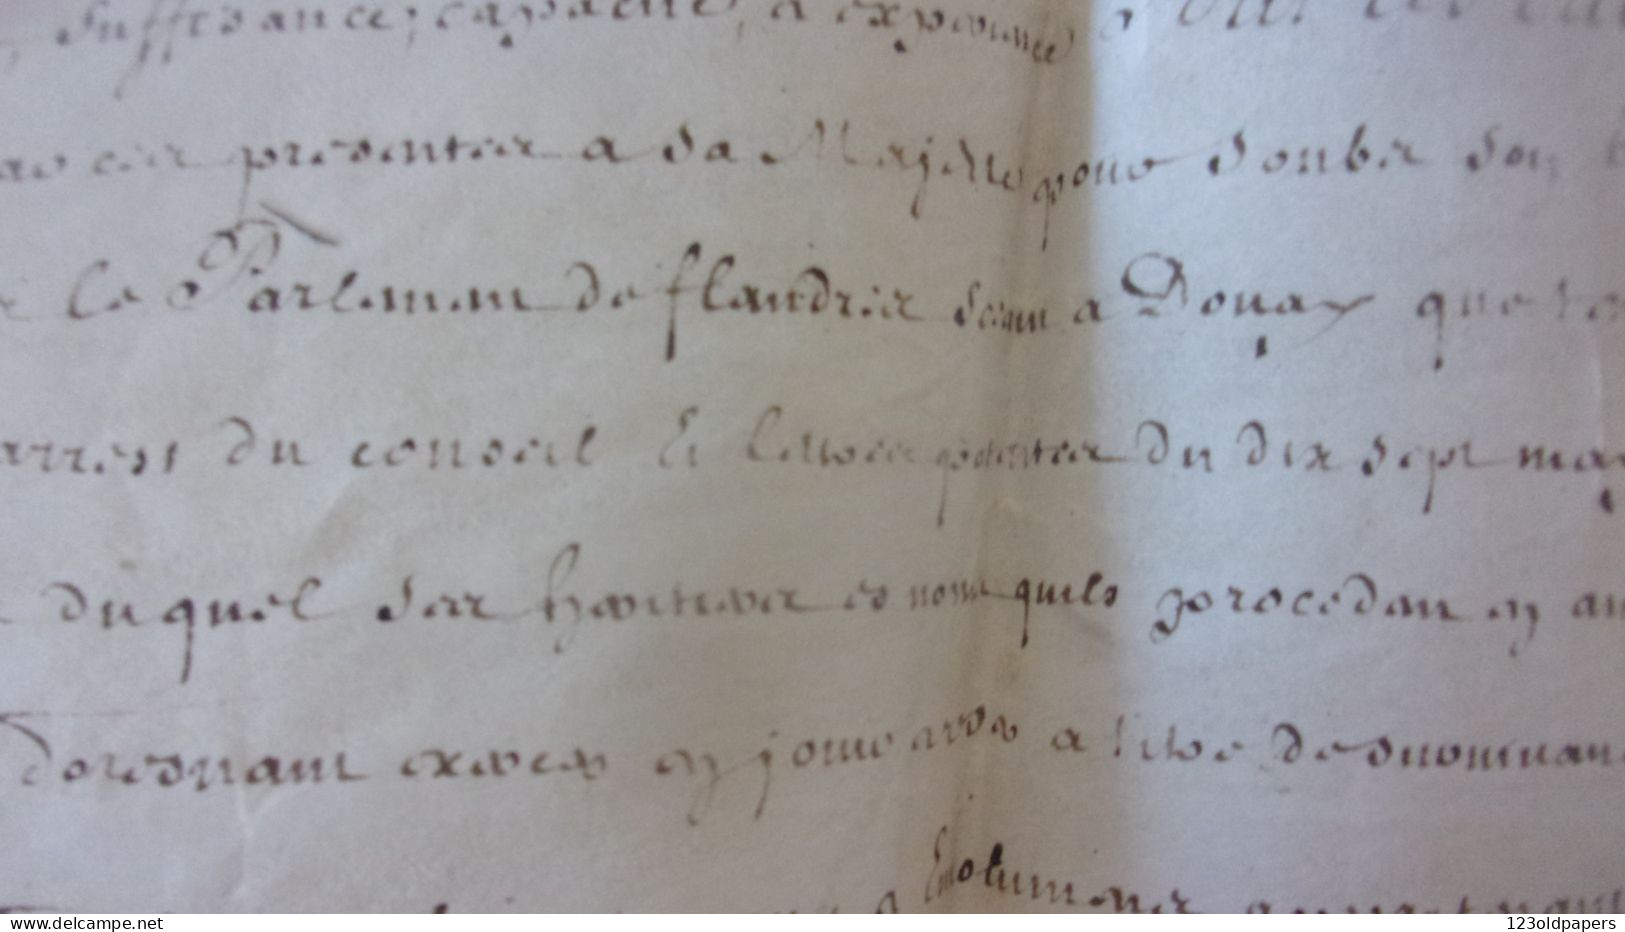 1724 Fleuriau d'Armenonville, GARDE DES SCEAUX CACHET CIRE DOUAI FLANDRES LIEVIN DANEL CHANCELLERIE CHEVALIER NOMINATION